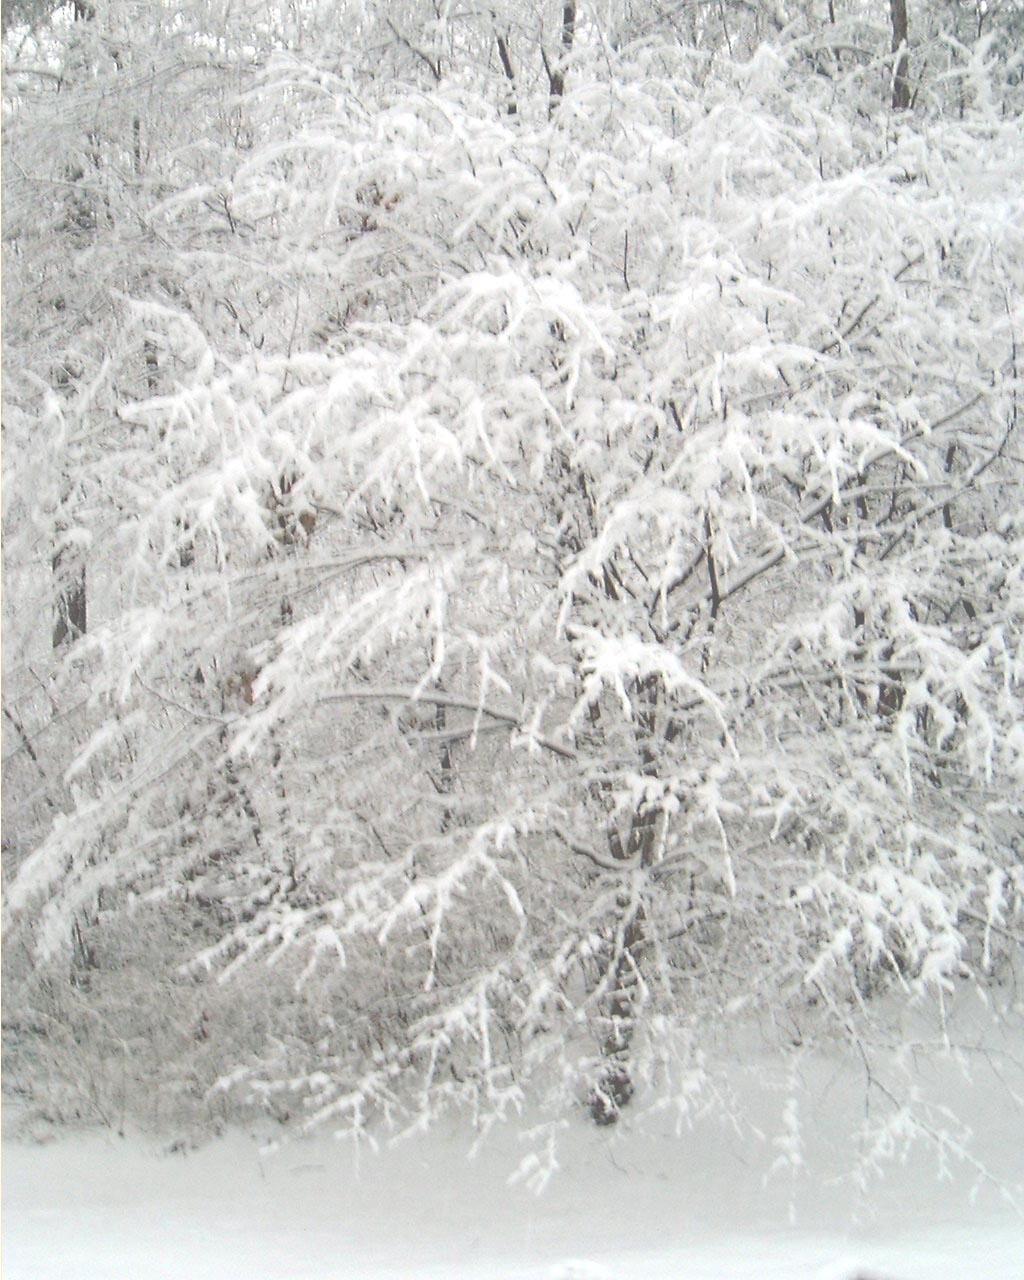 [snow+fav+tree.jpg]